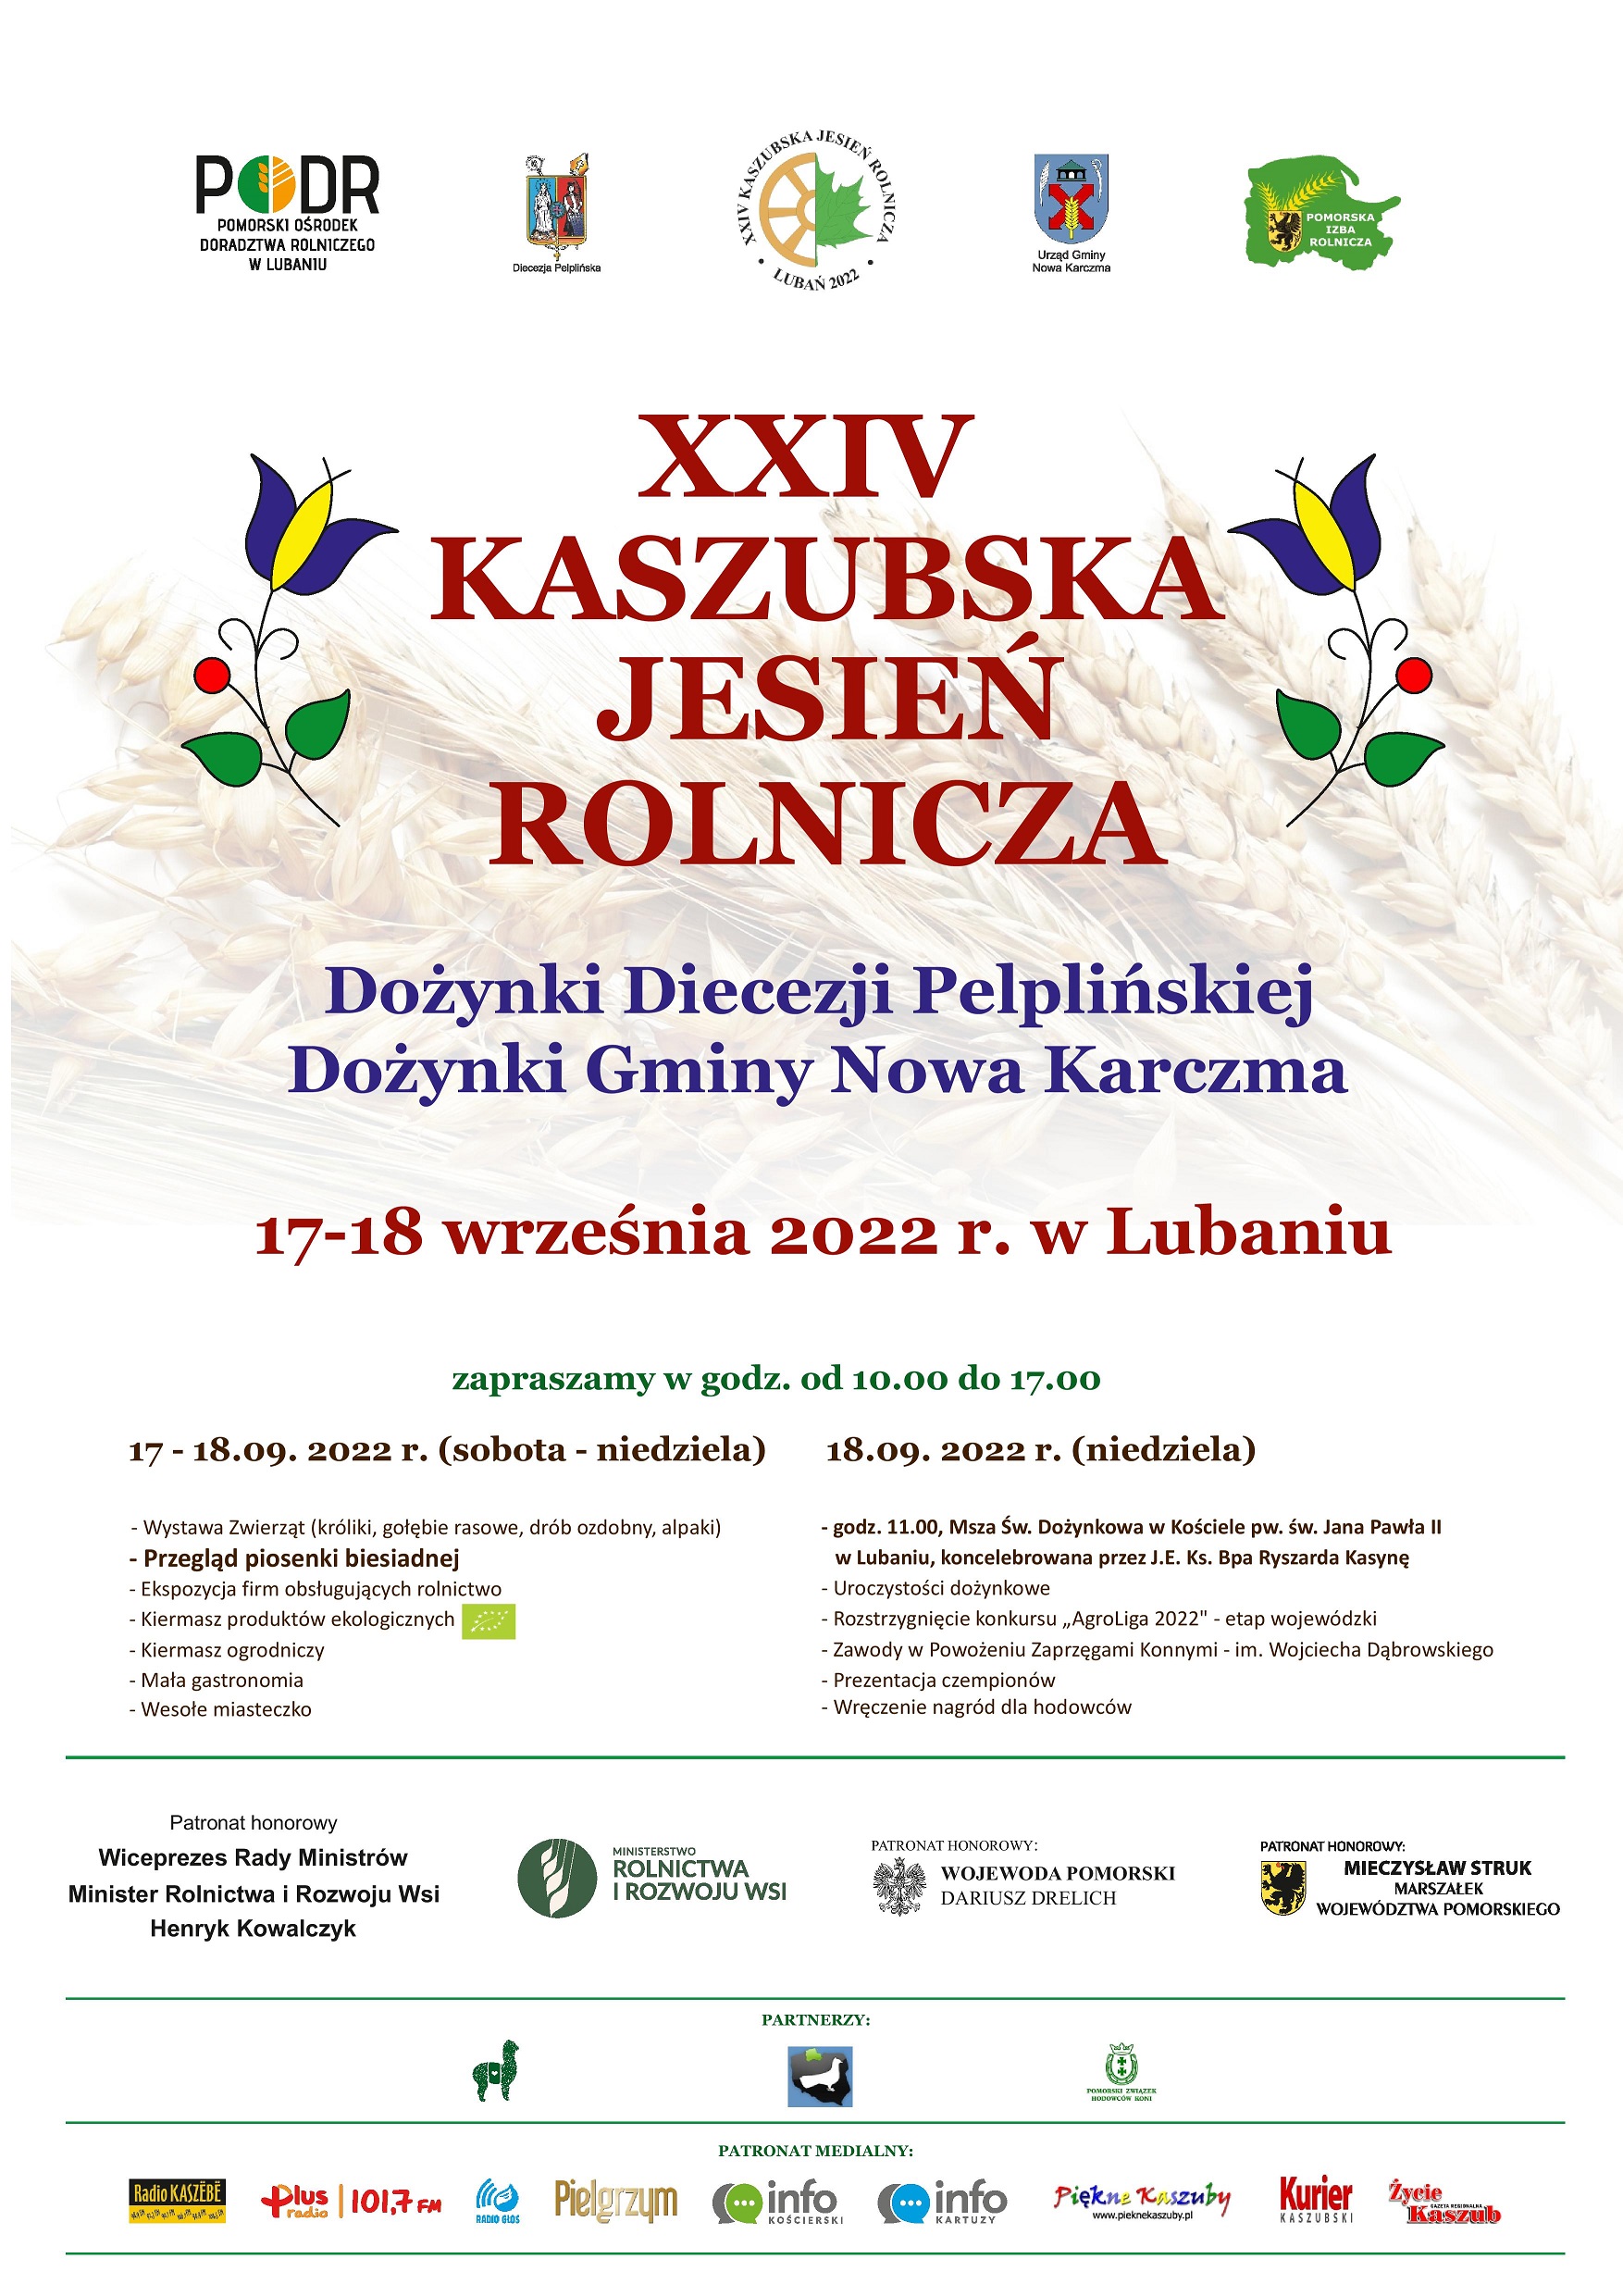 XXIV Kaszubska Jesień Rolnicza, Dożynki - plakat